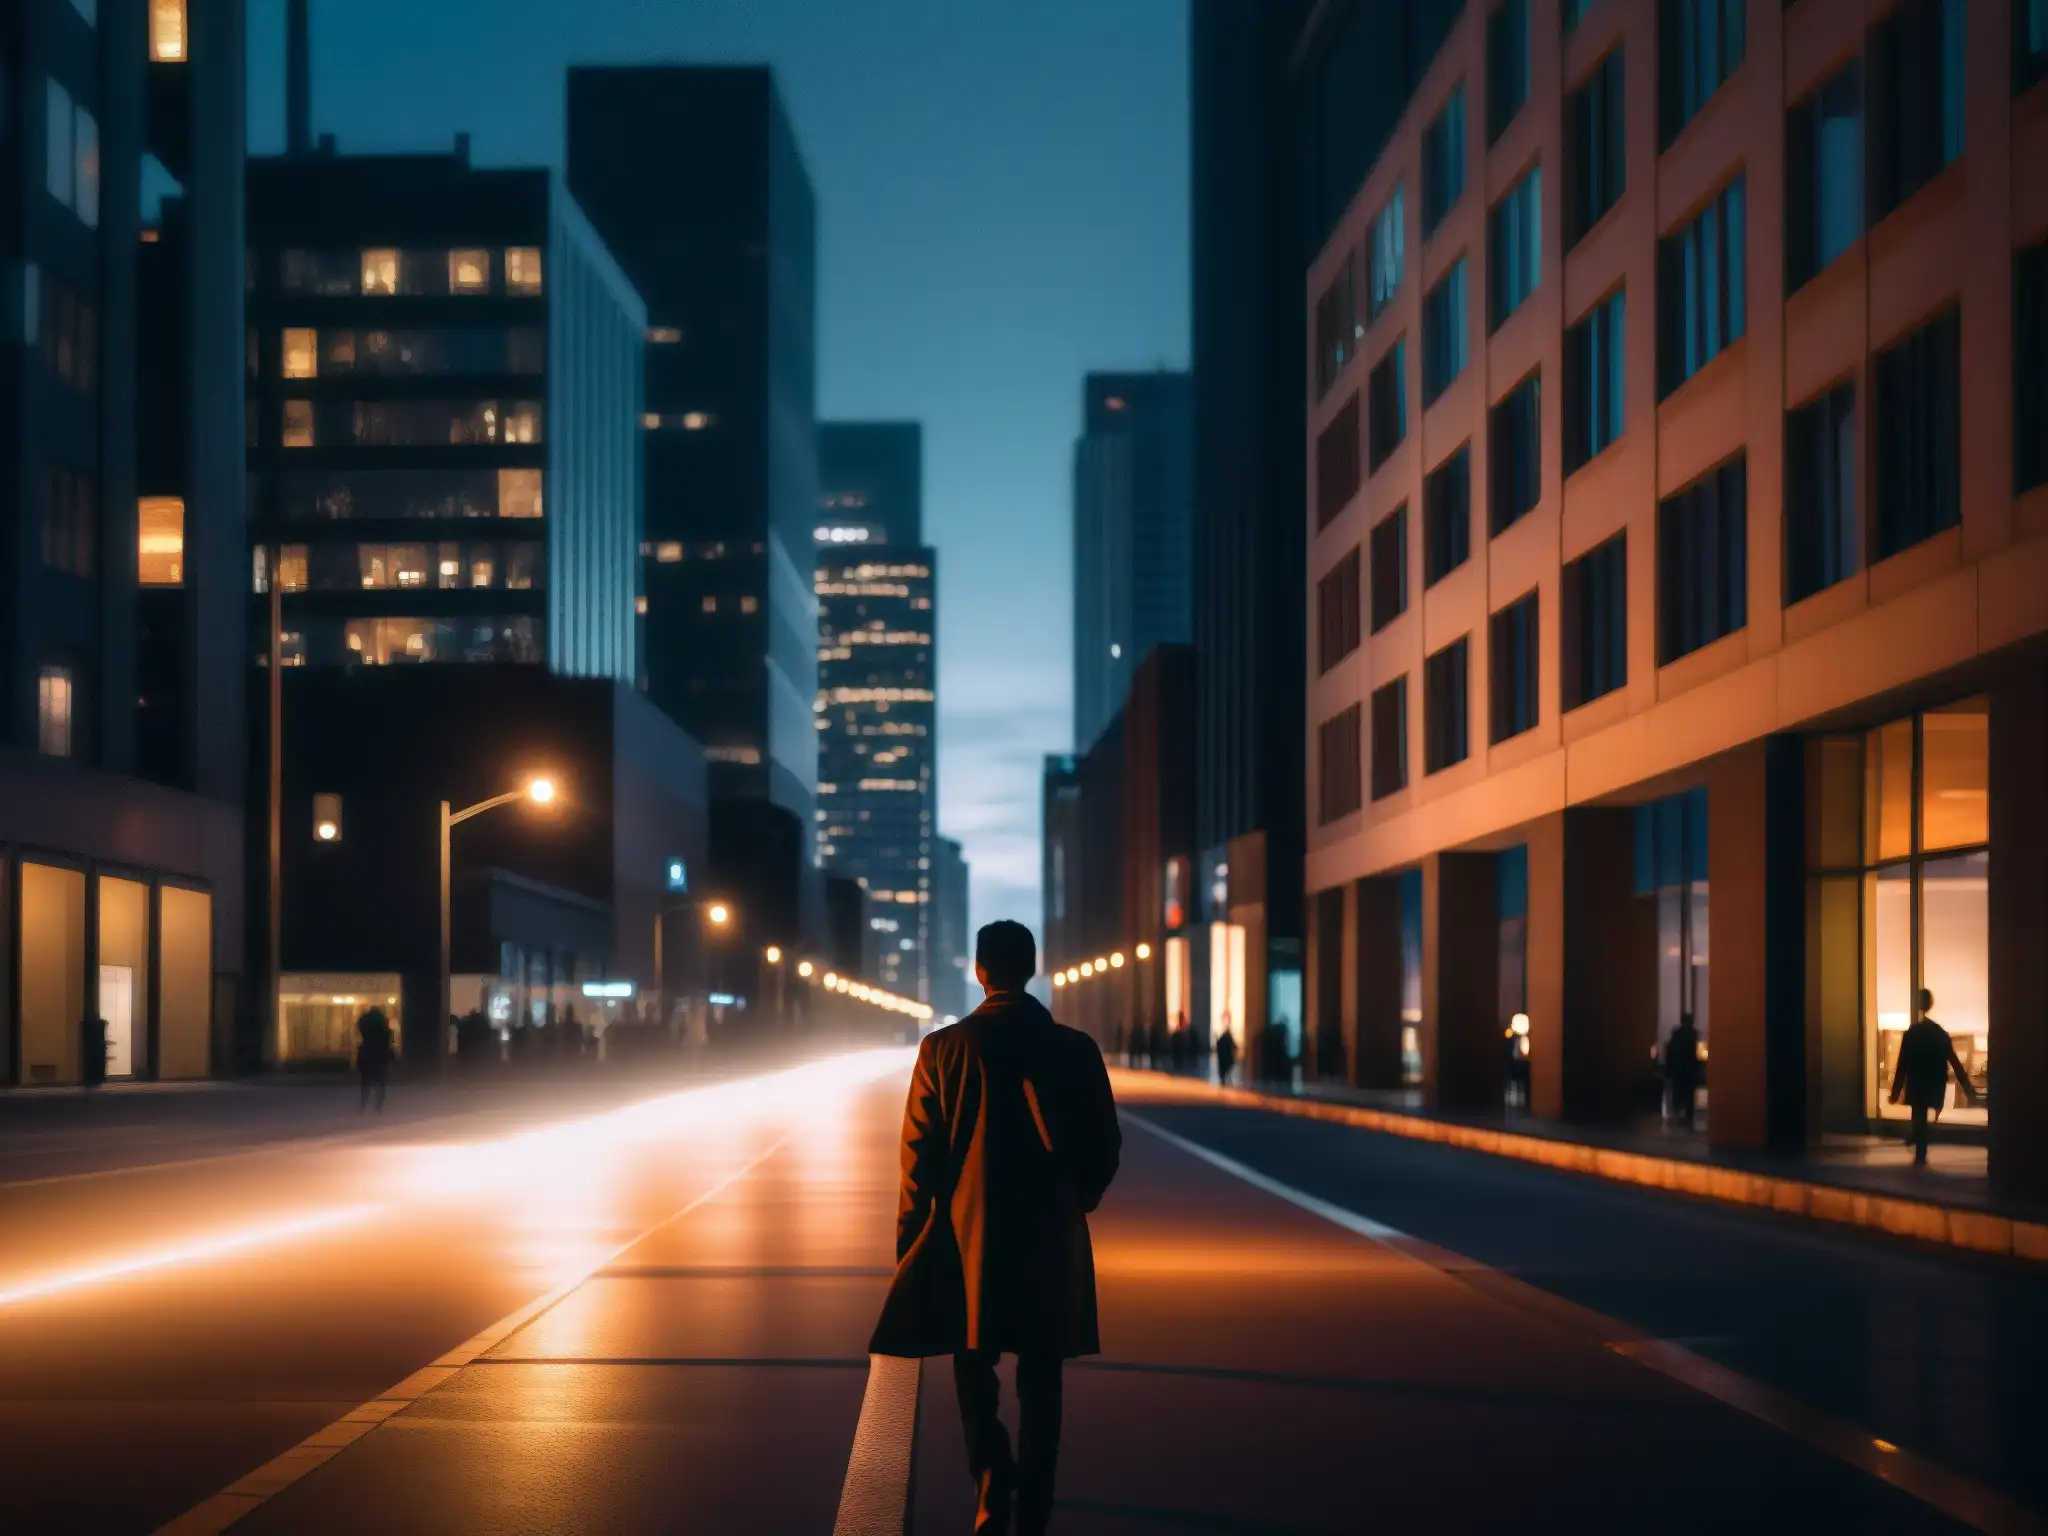 Persona solitaria camina de noche por la ciudad, su rostro iluminado por el celular, reflejando el impacto de las redes sociales